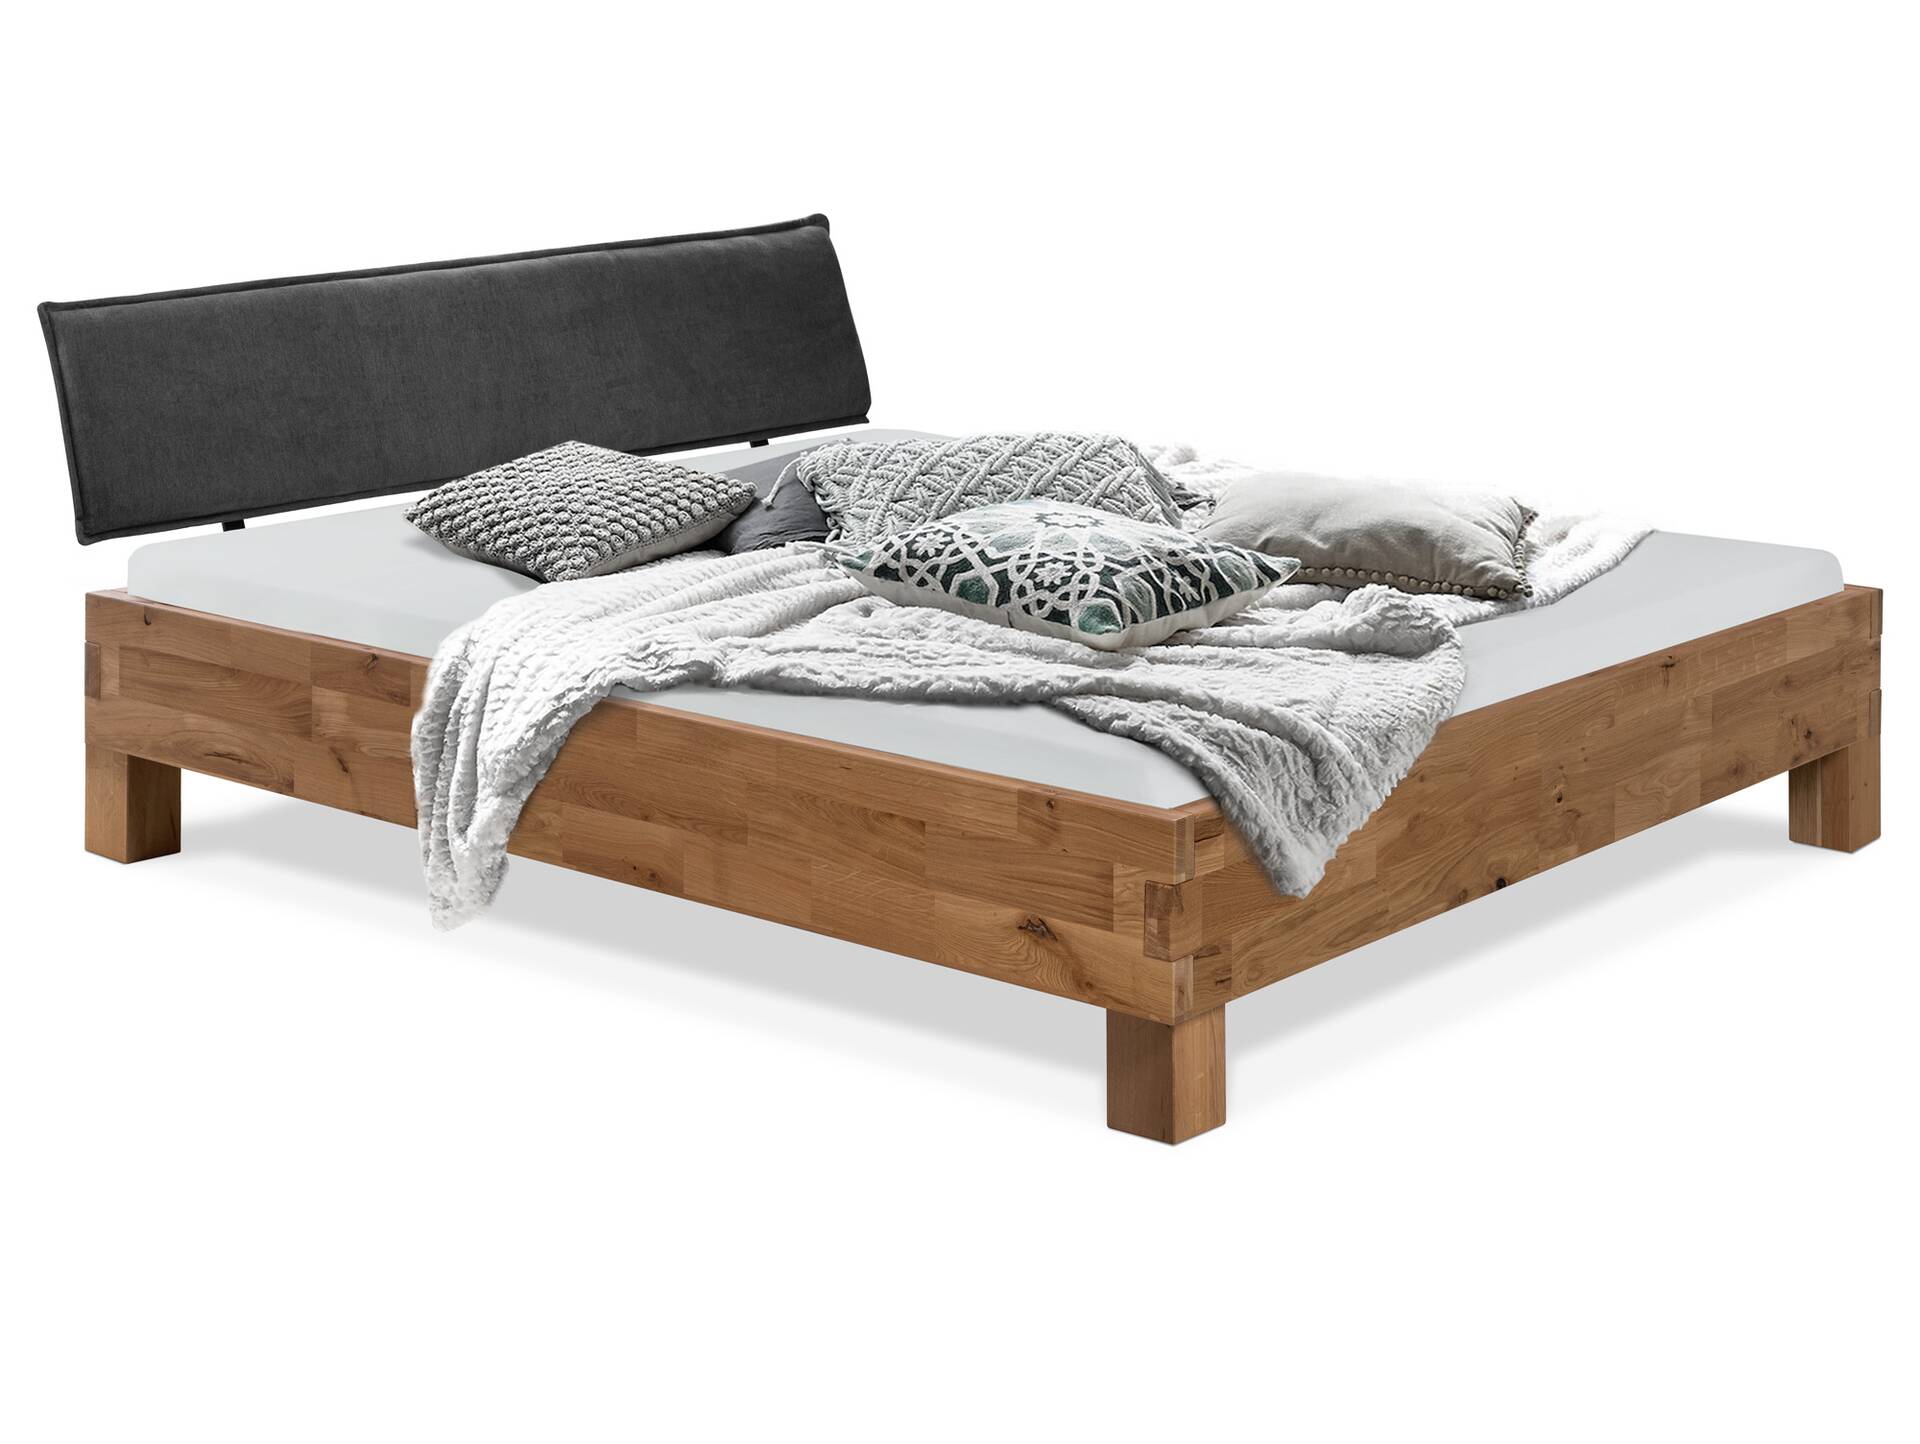 CORDINO 4-Fuß-Bett aus Eiche mit Polster-Kopfteil, Material Massivholz 120 x 220 cm | Eiche unbehandelt | Stoff Anthrazit | gebürstet